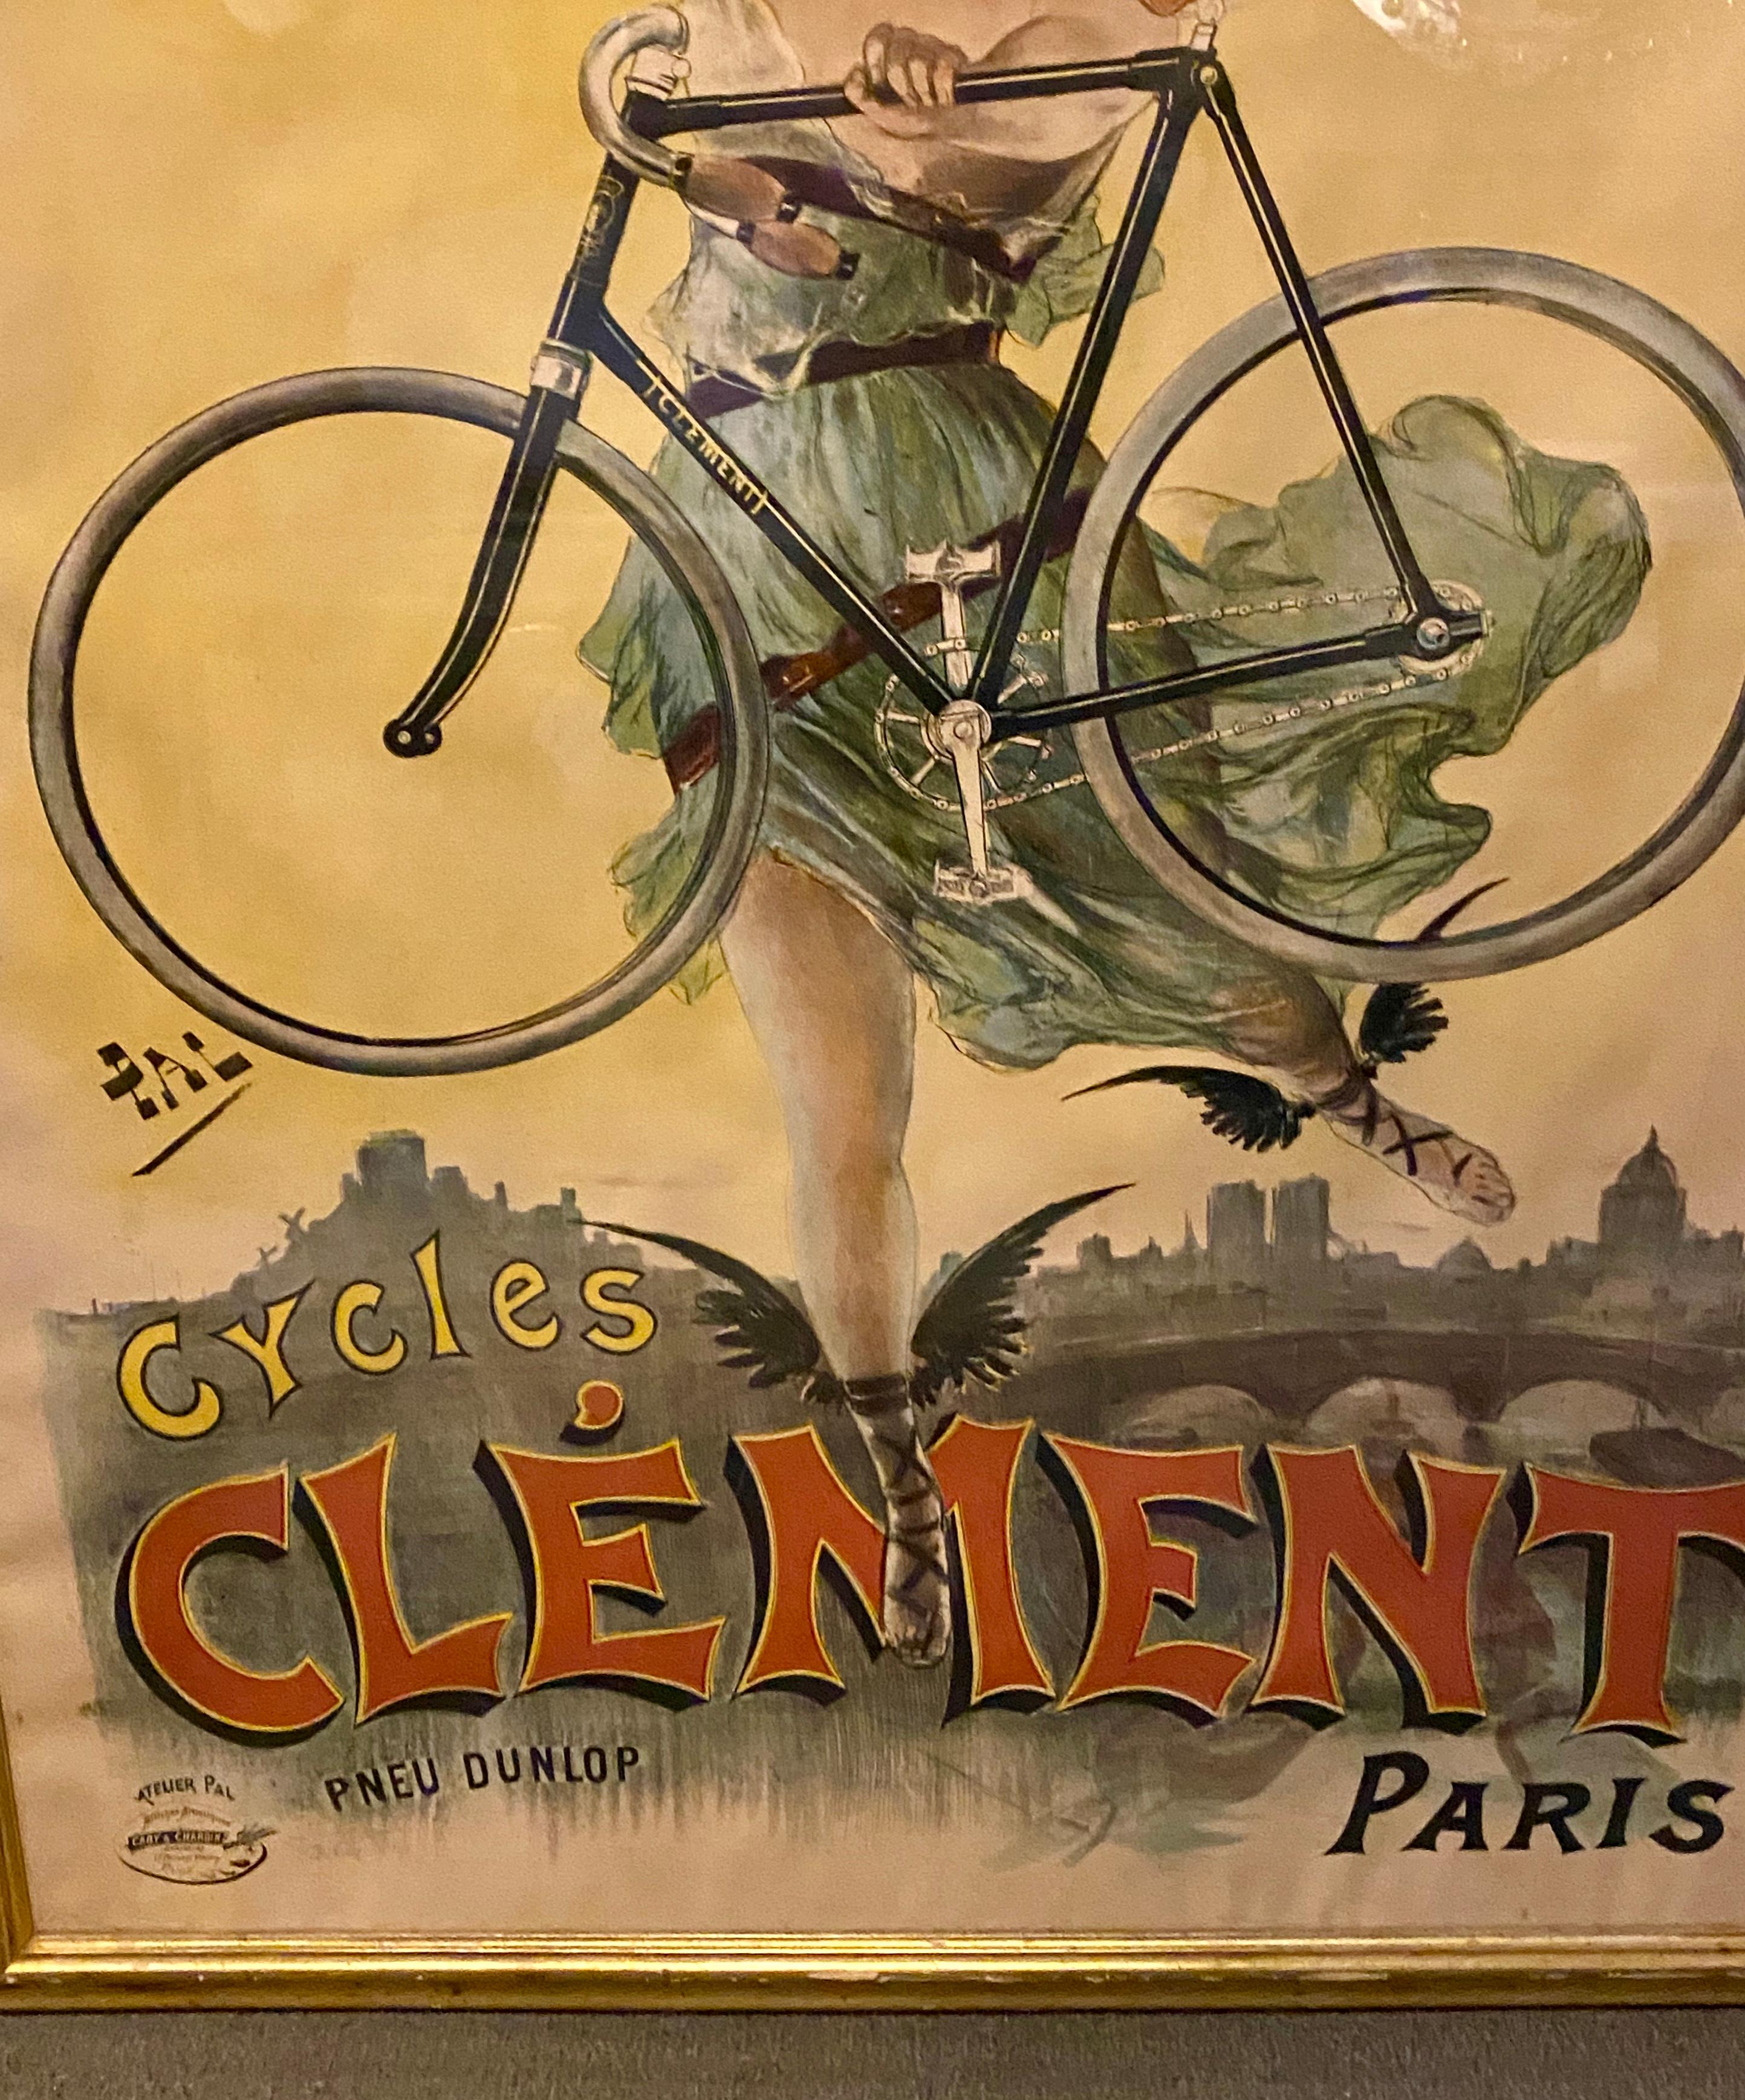 Original Pal poster cycles clement Paris by Pneu Dunlop, framed
A 